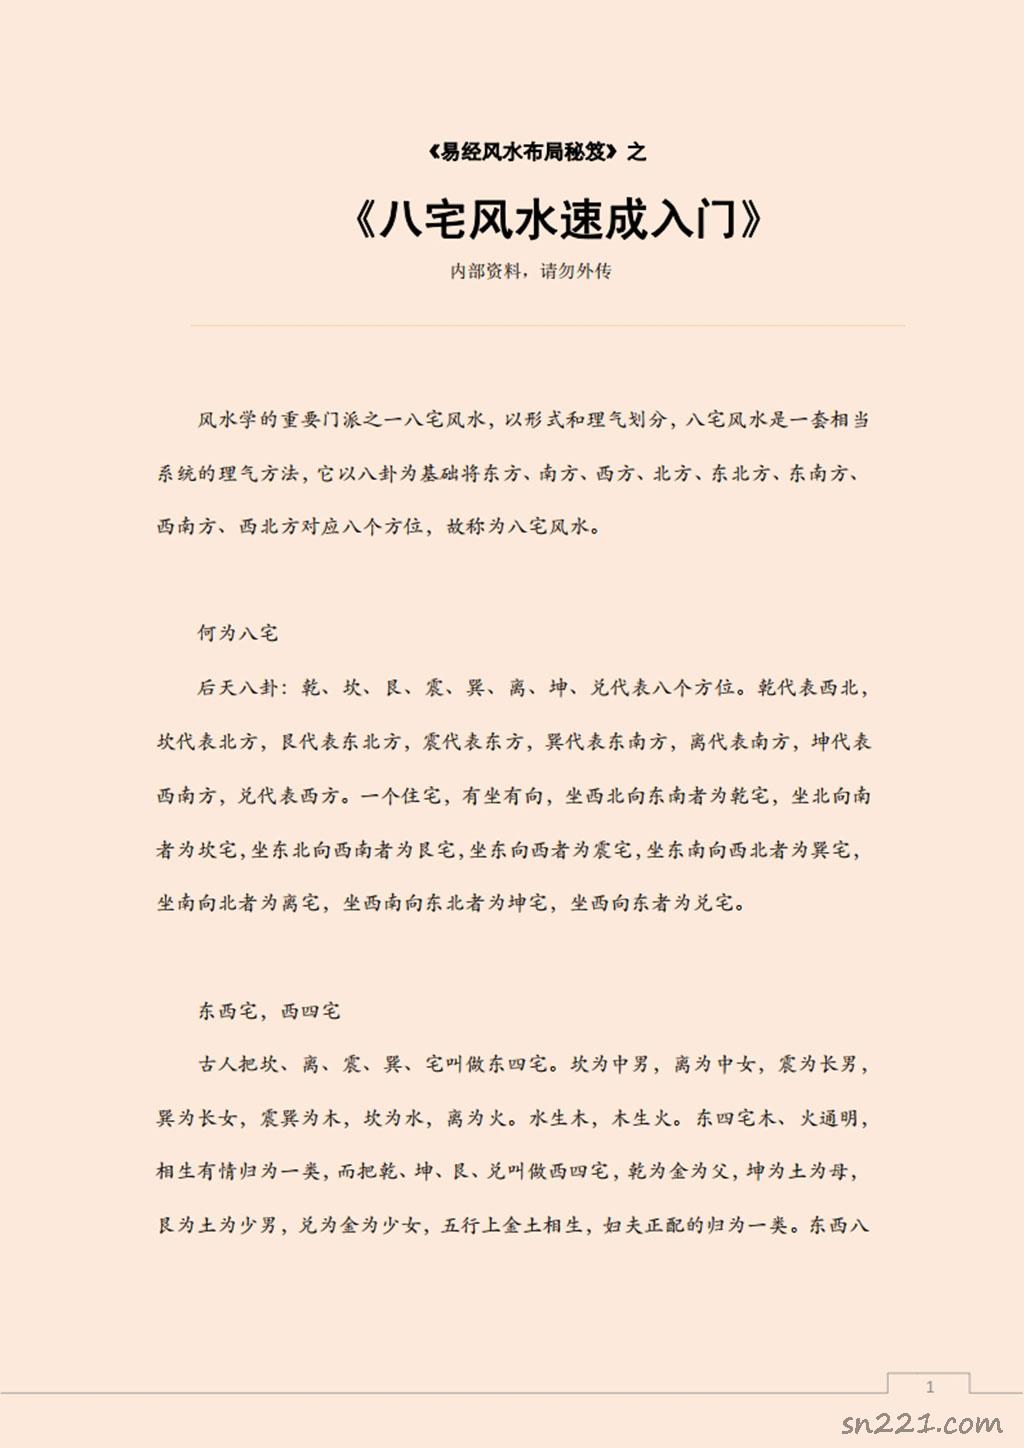 易經風水佈局秘笈之《八宅風水速成入門》.pdf